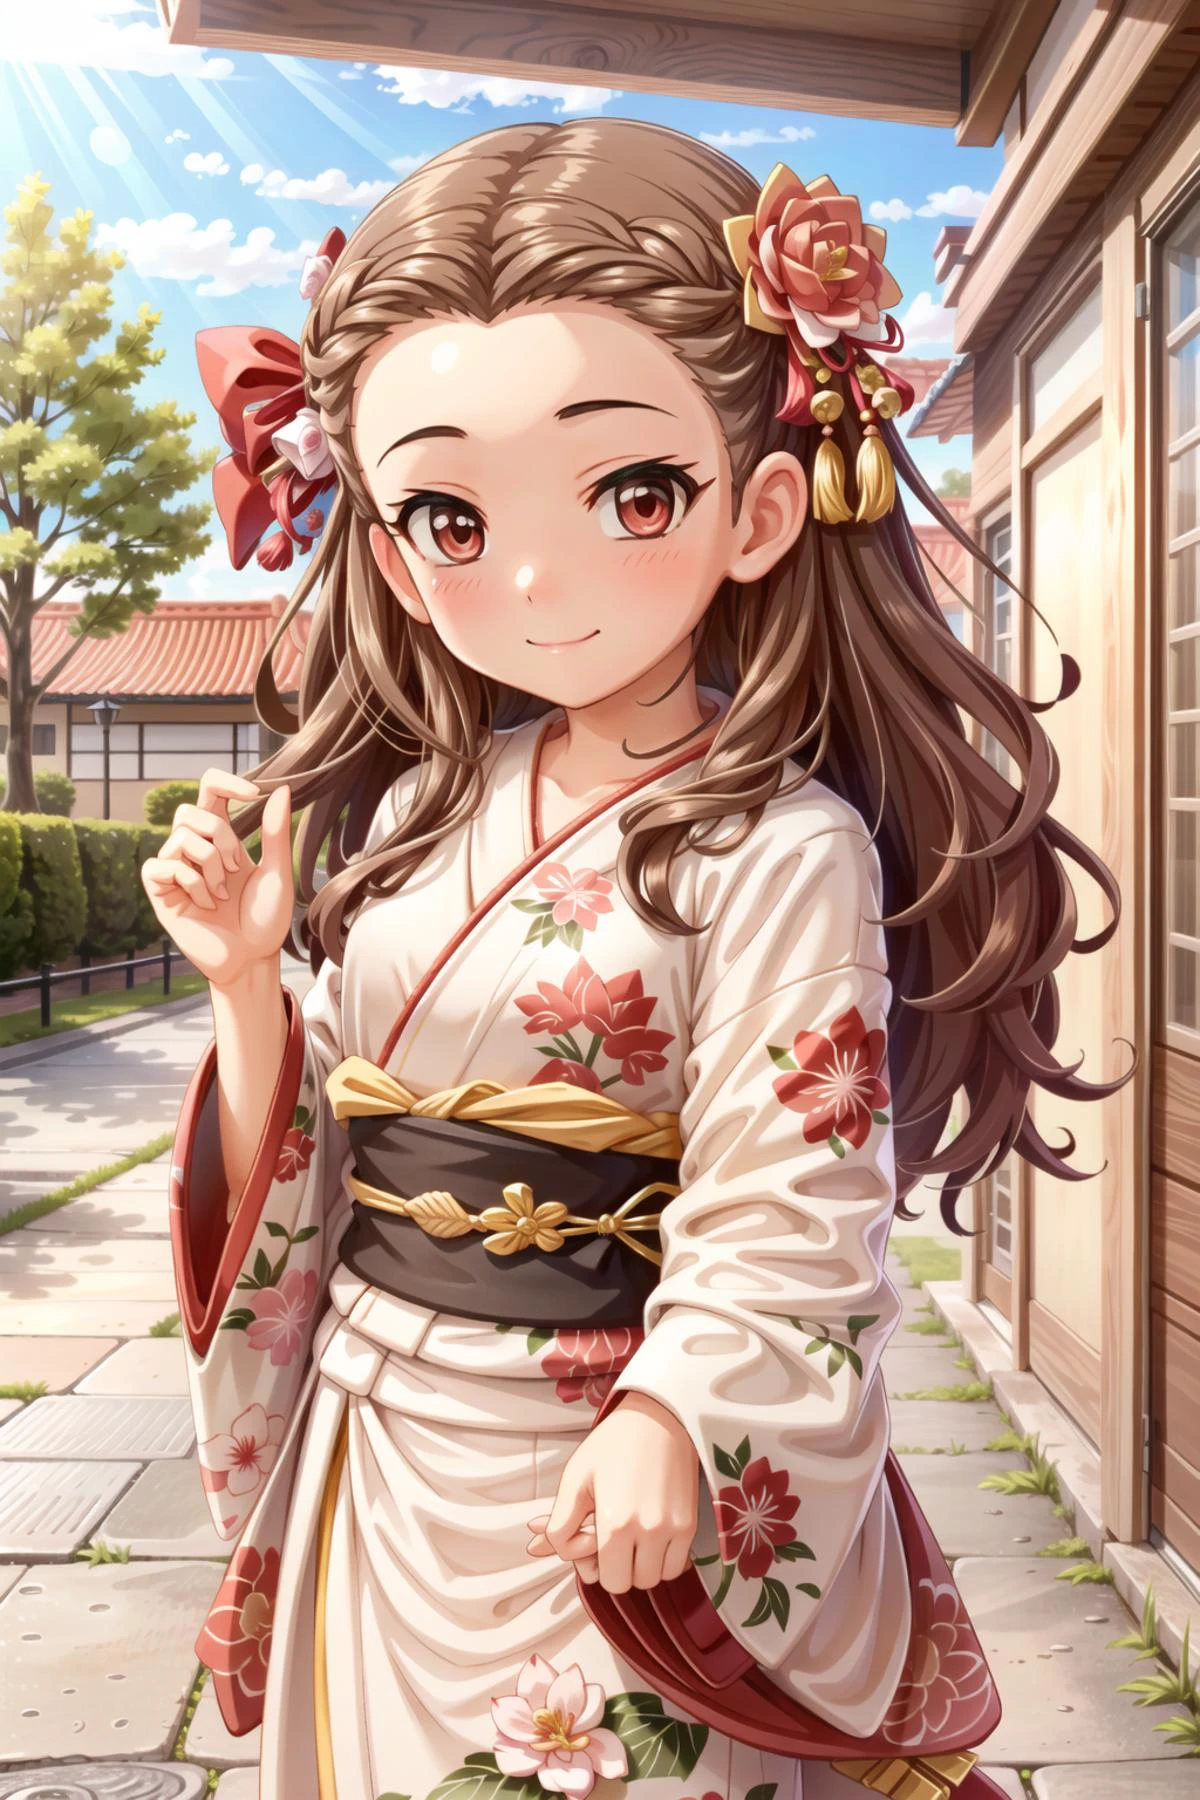 seki hiromi, cheveux longs, cheveux bruns, les yeux rouges, cheveux ondulés, 1fille, seulement, sourire, en plein air, 1fille, seulement, vêtements japonais,kimono, ornement de cheveux, regarder le spectateur, Kimono rouge, cœur, Ceinture, hair fleur, fleur, frange, Rougir, manches longues, bouche fermée, manches larges, imprimé floral, red fleur, kimono imprimé, lever la main, debout, gland, en plein air, haut du corps, usine, jour